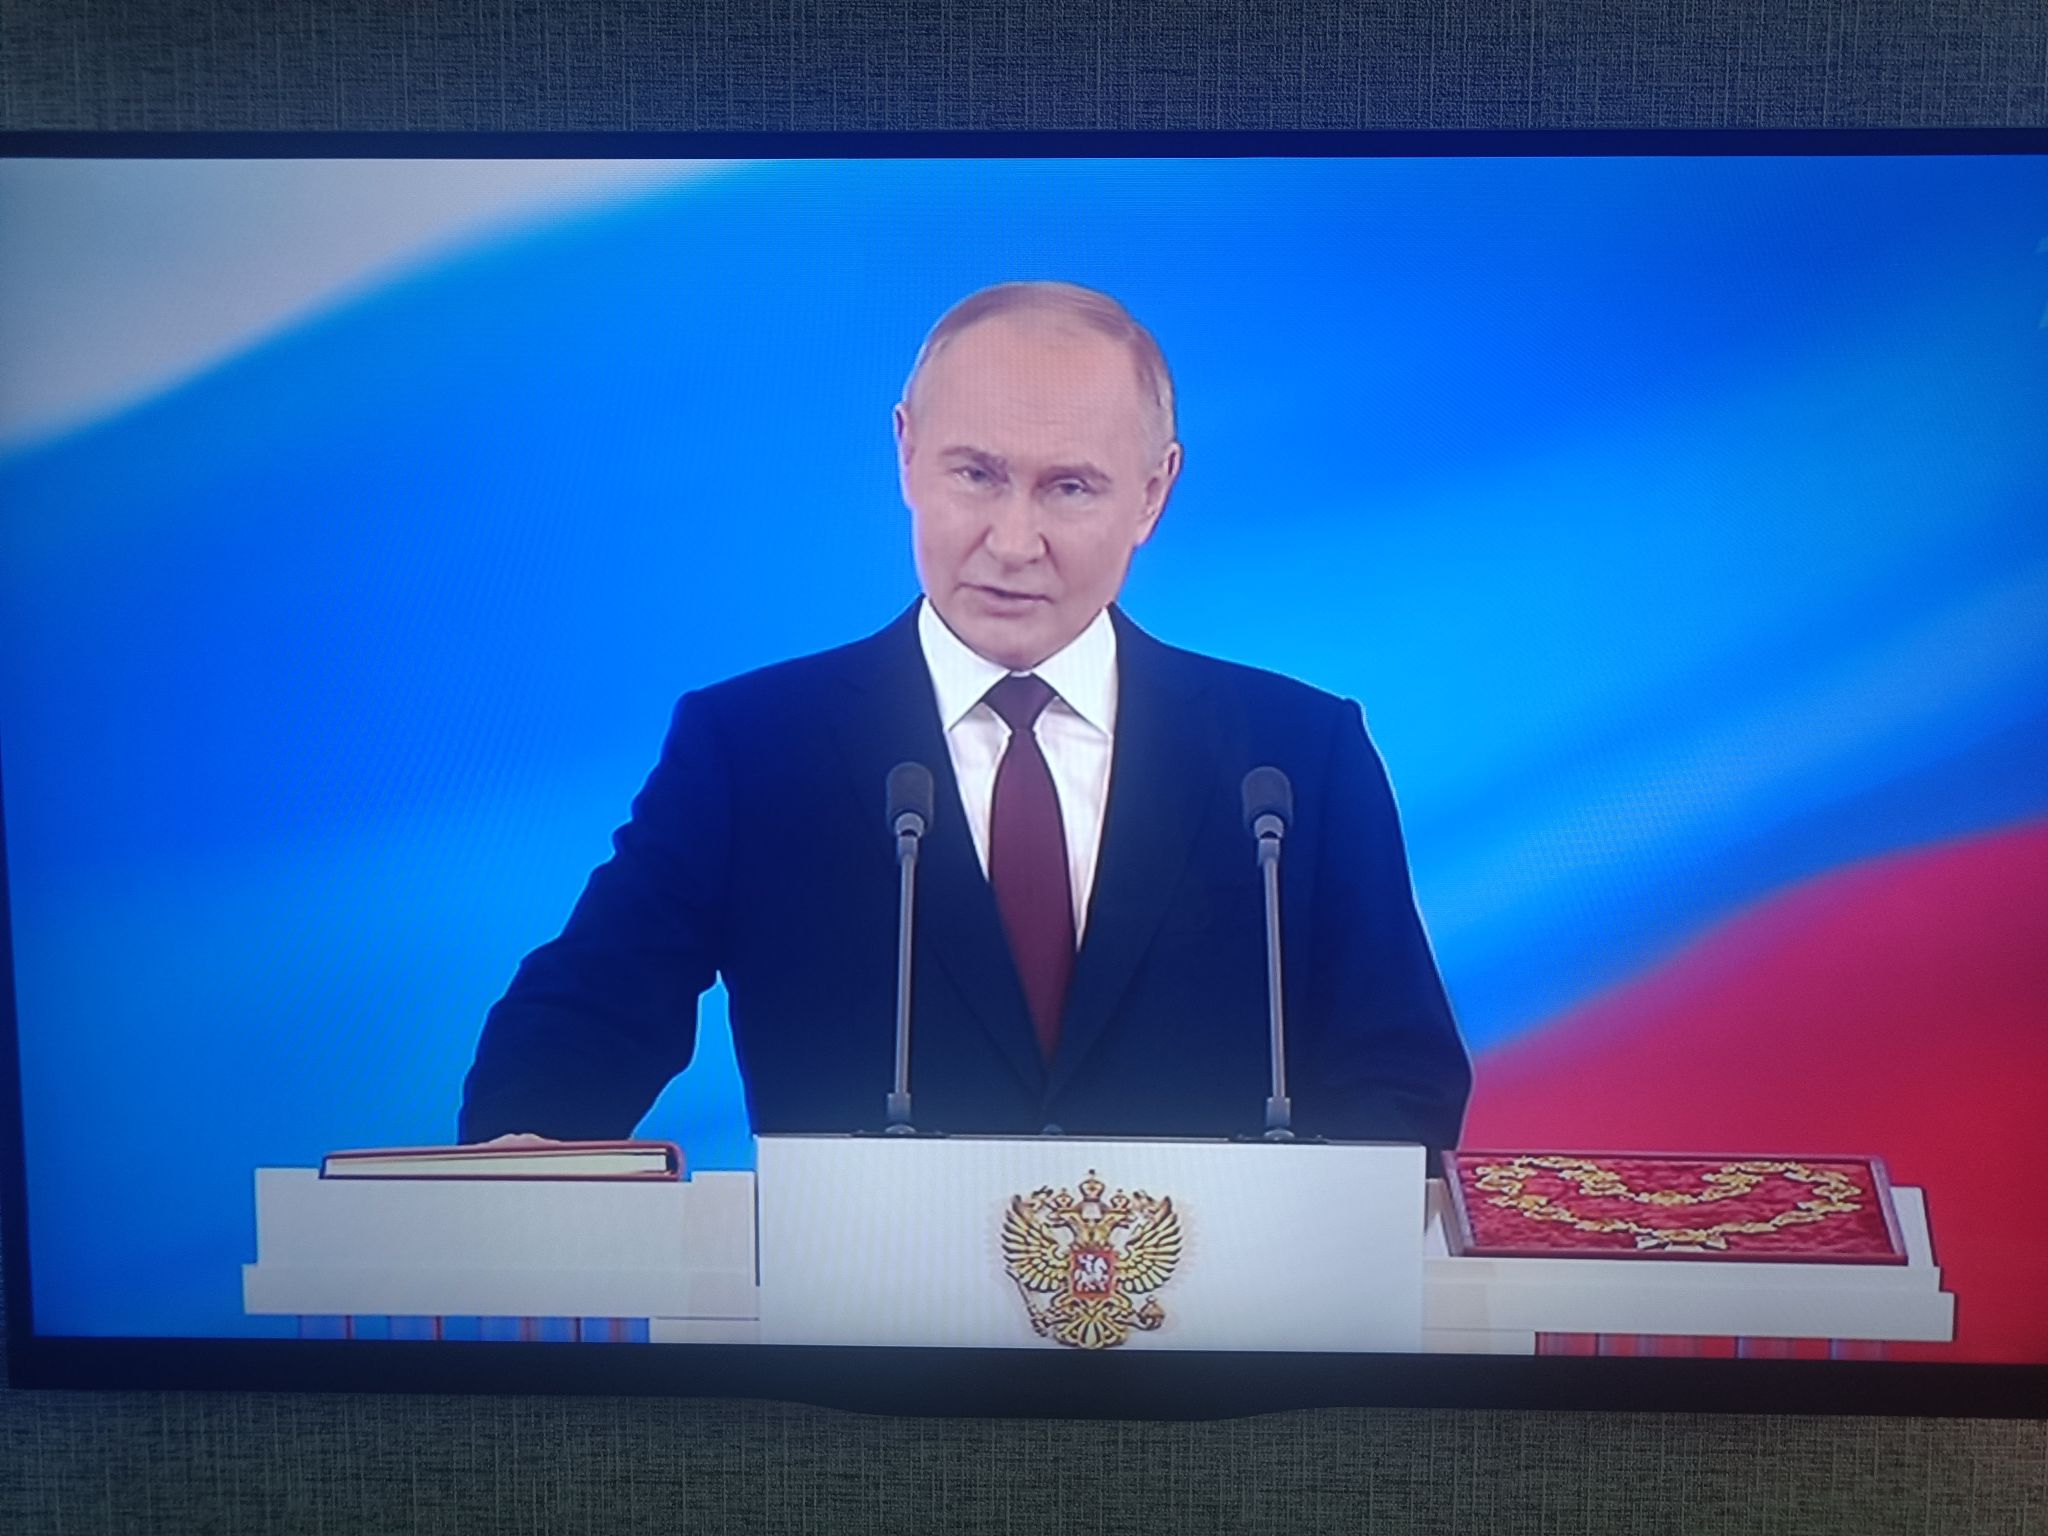 Салютом из 30 залпов в честь президента завершилась церемония инаугурации Путина